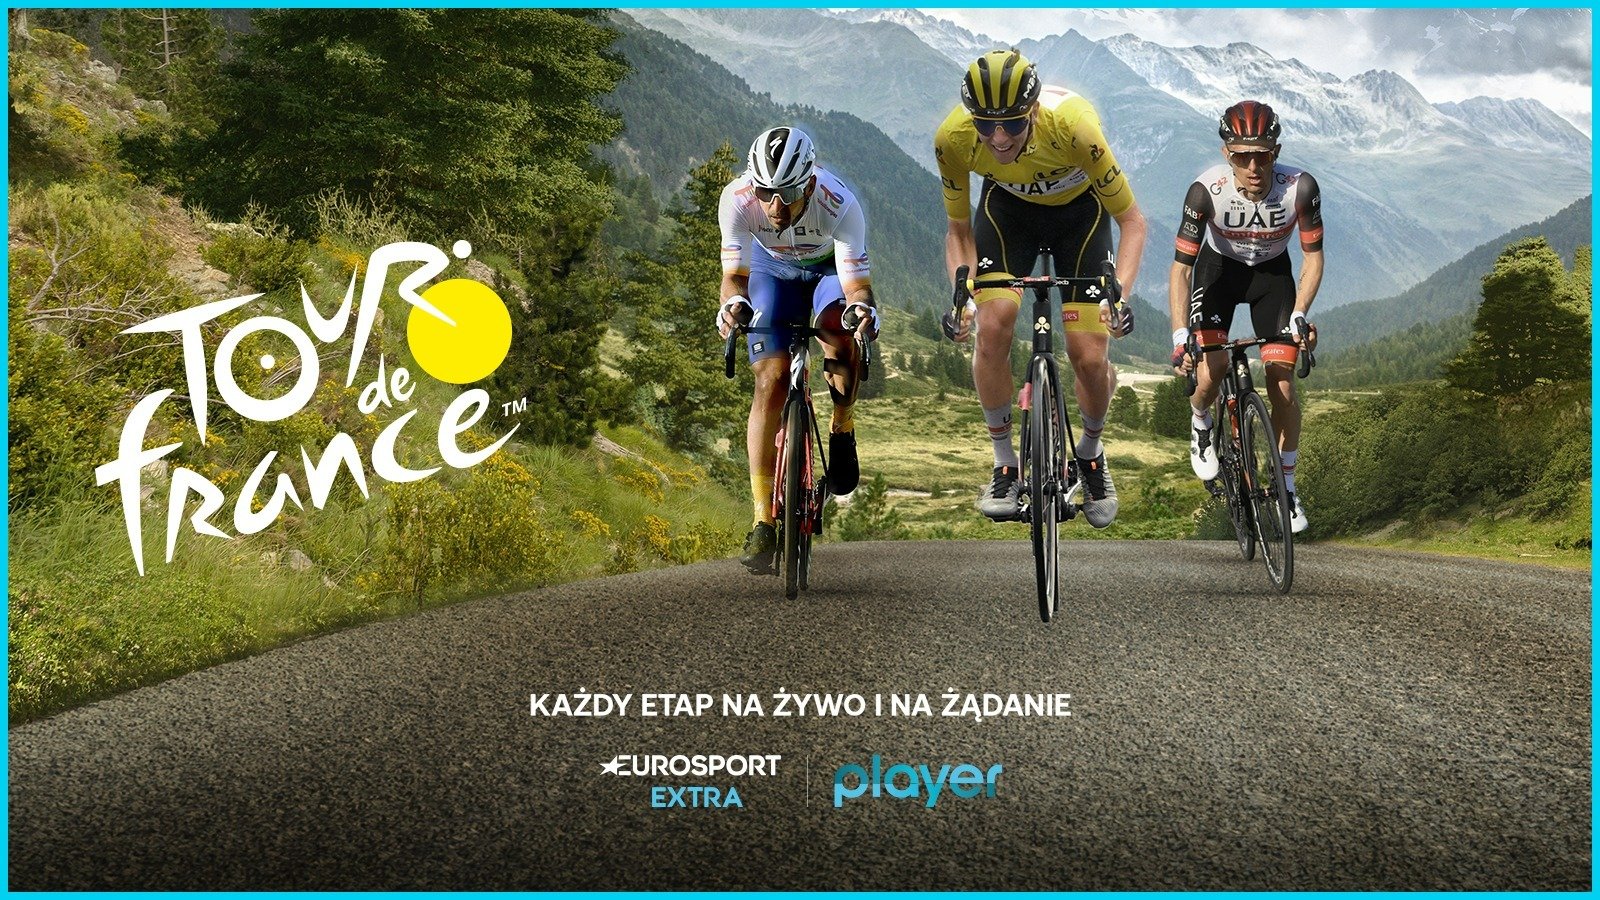 Gdzie oglądać Tour de France? Wyścig w całości w Eurosport i Player! Jak uzyskać dostęp?